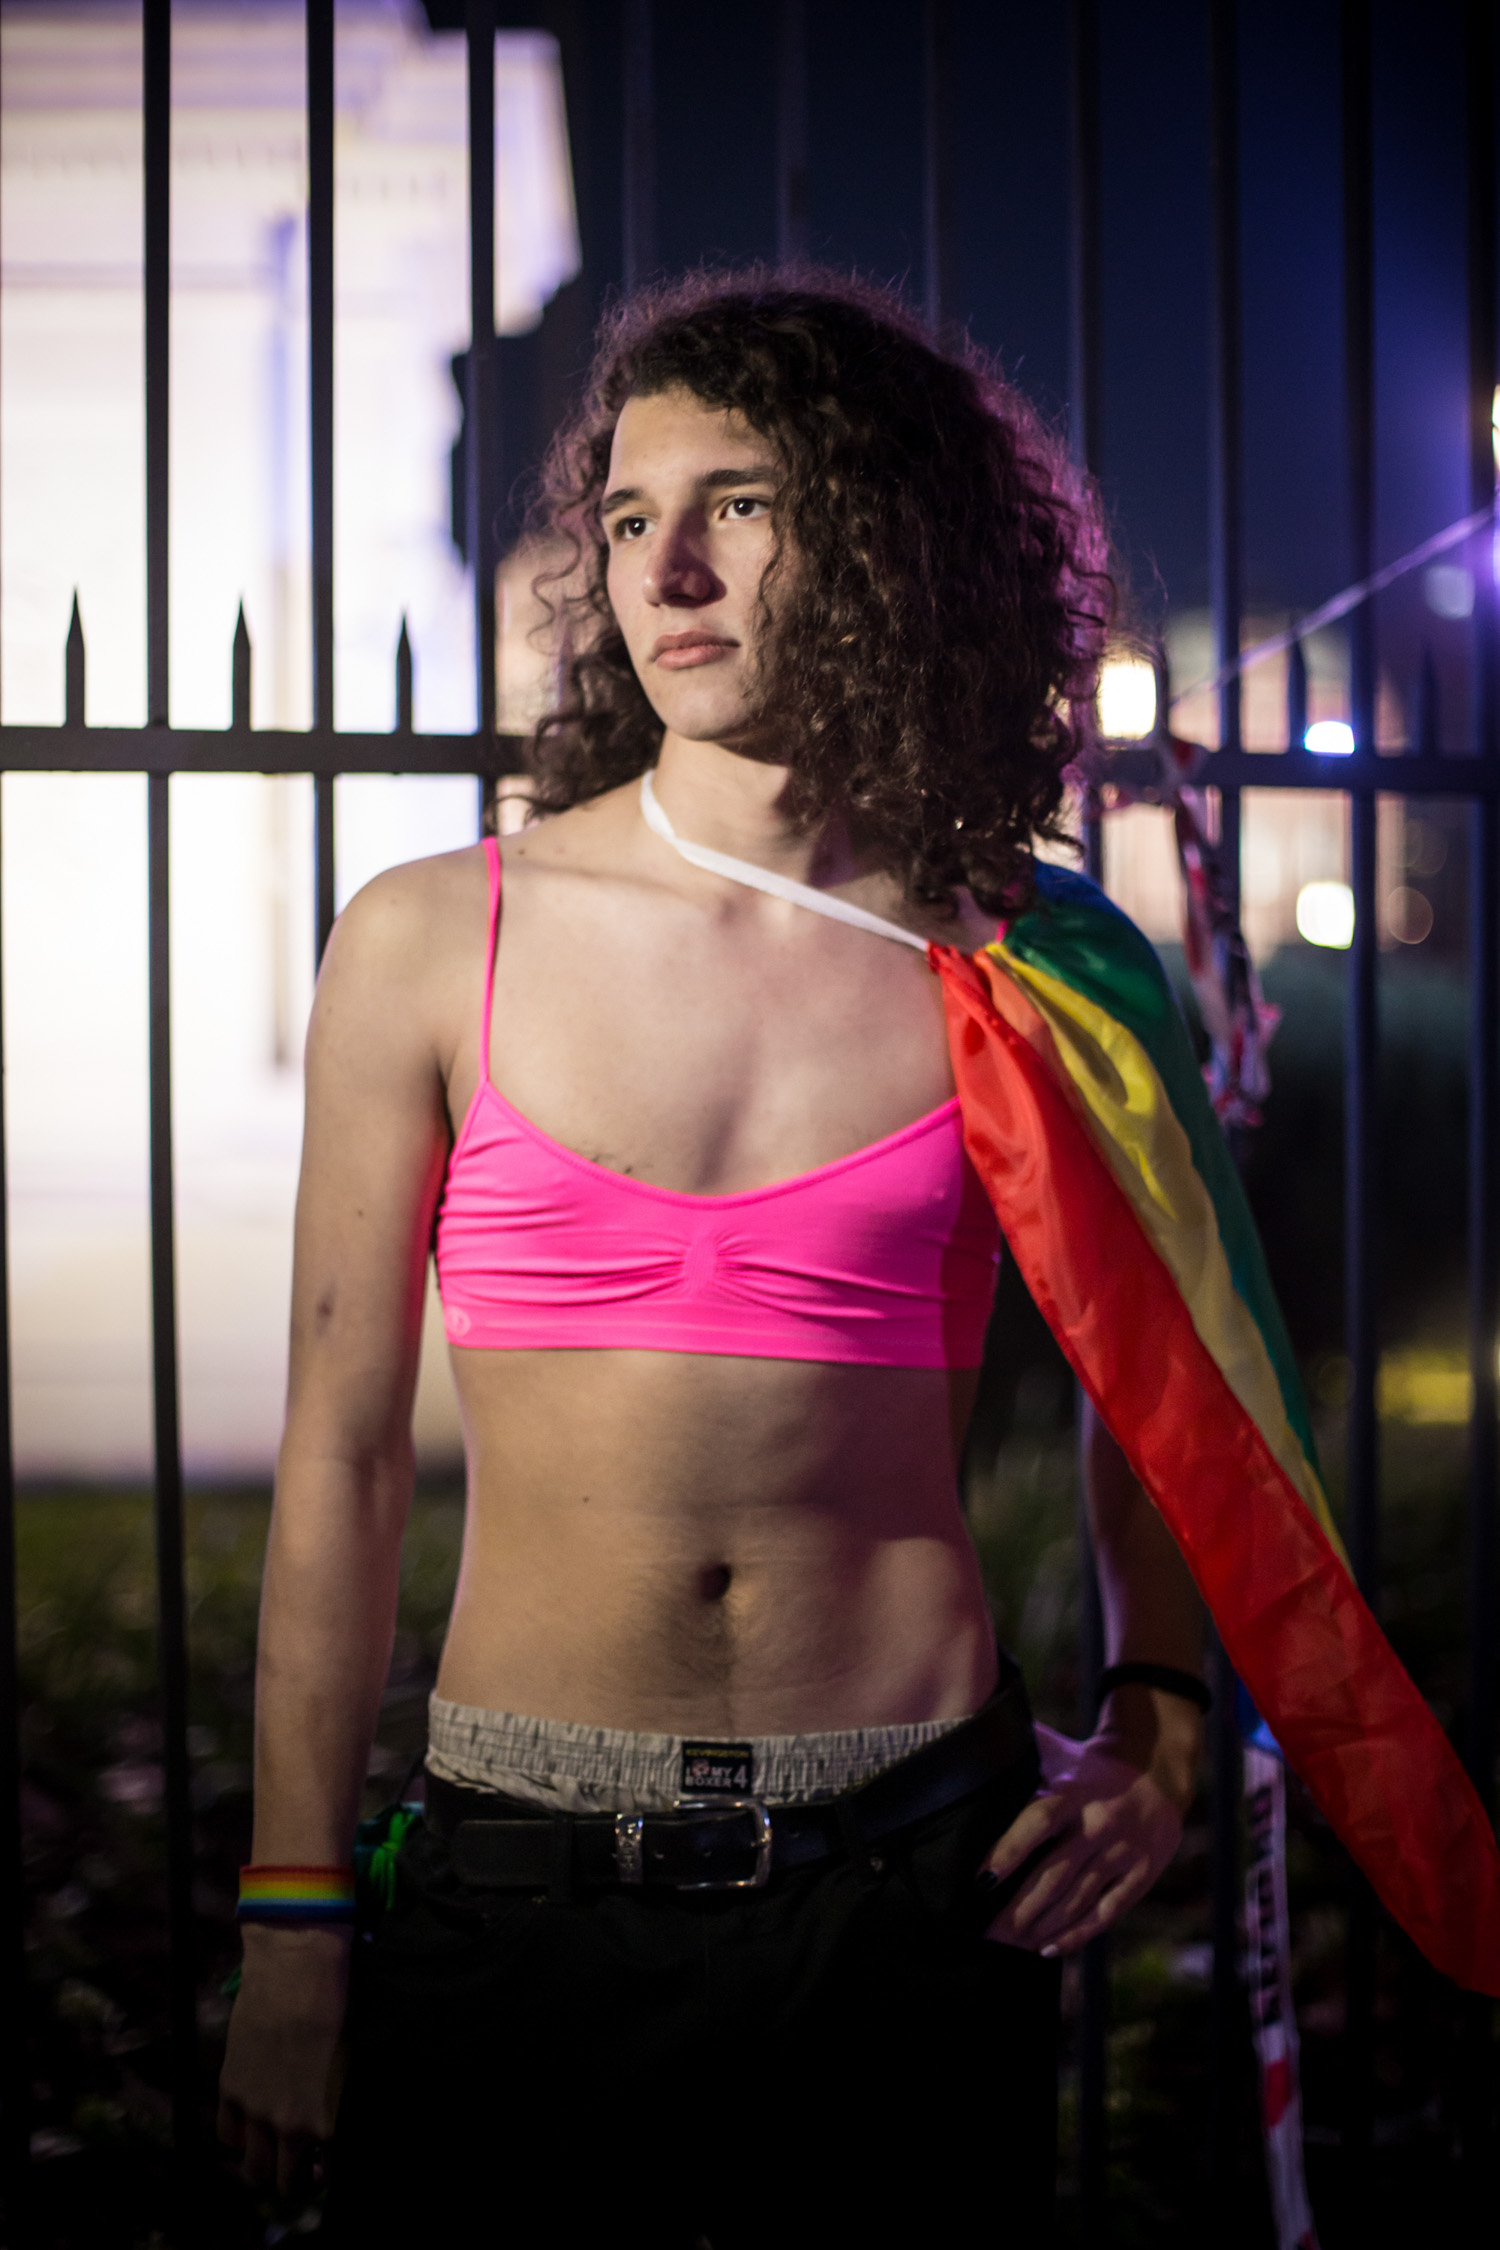 El grito cada vez más fuerte: marcha y abrazo contra los travesticidios y transfemicidios